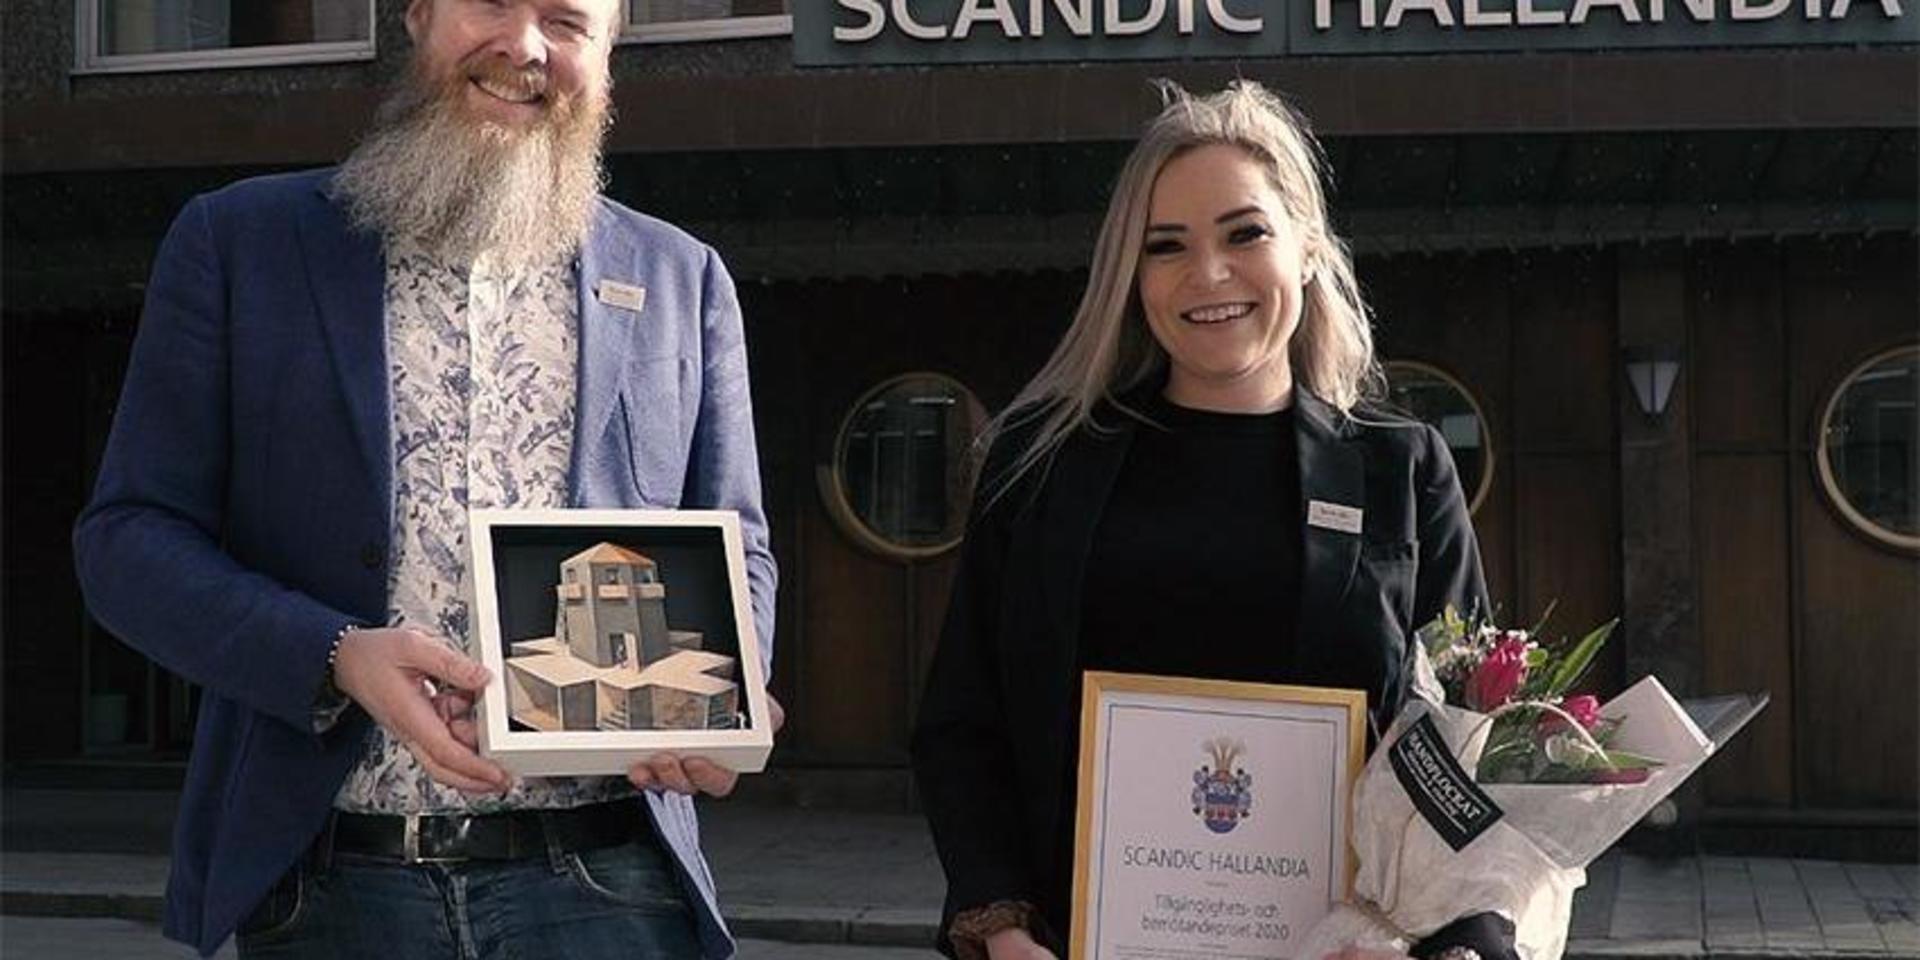 Thomas Hansen, hotelldirektör, och Michelle Berntsson, hotellchef, tog emot Scandic Hallandias tillgänglighets- och bemötandepris.